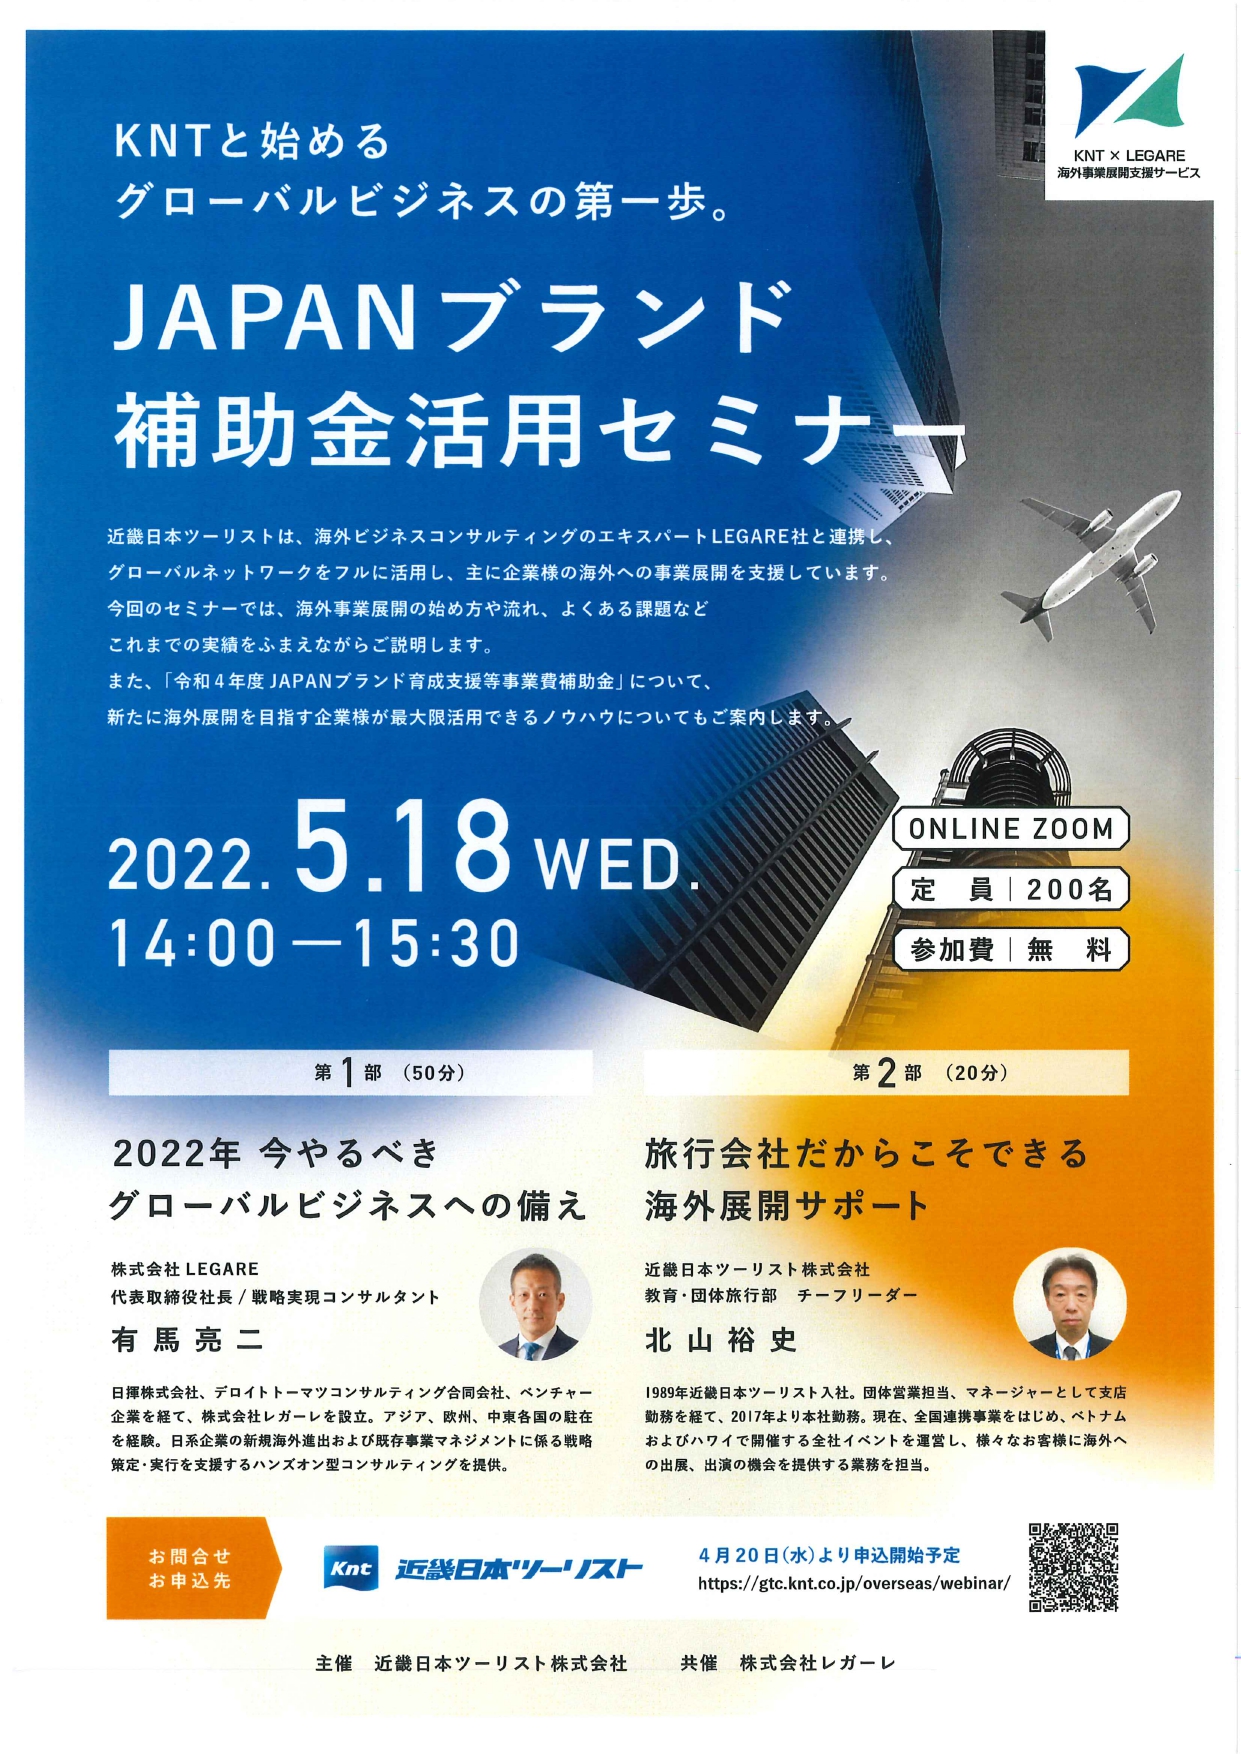 【5月18日】「JAPANブランド補助金活用セミナー」の開催について